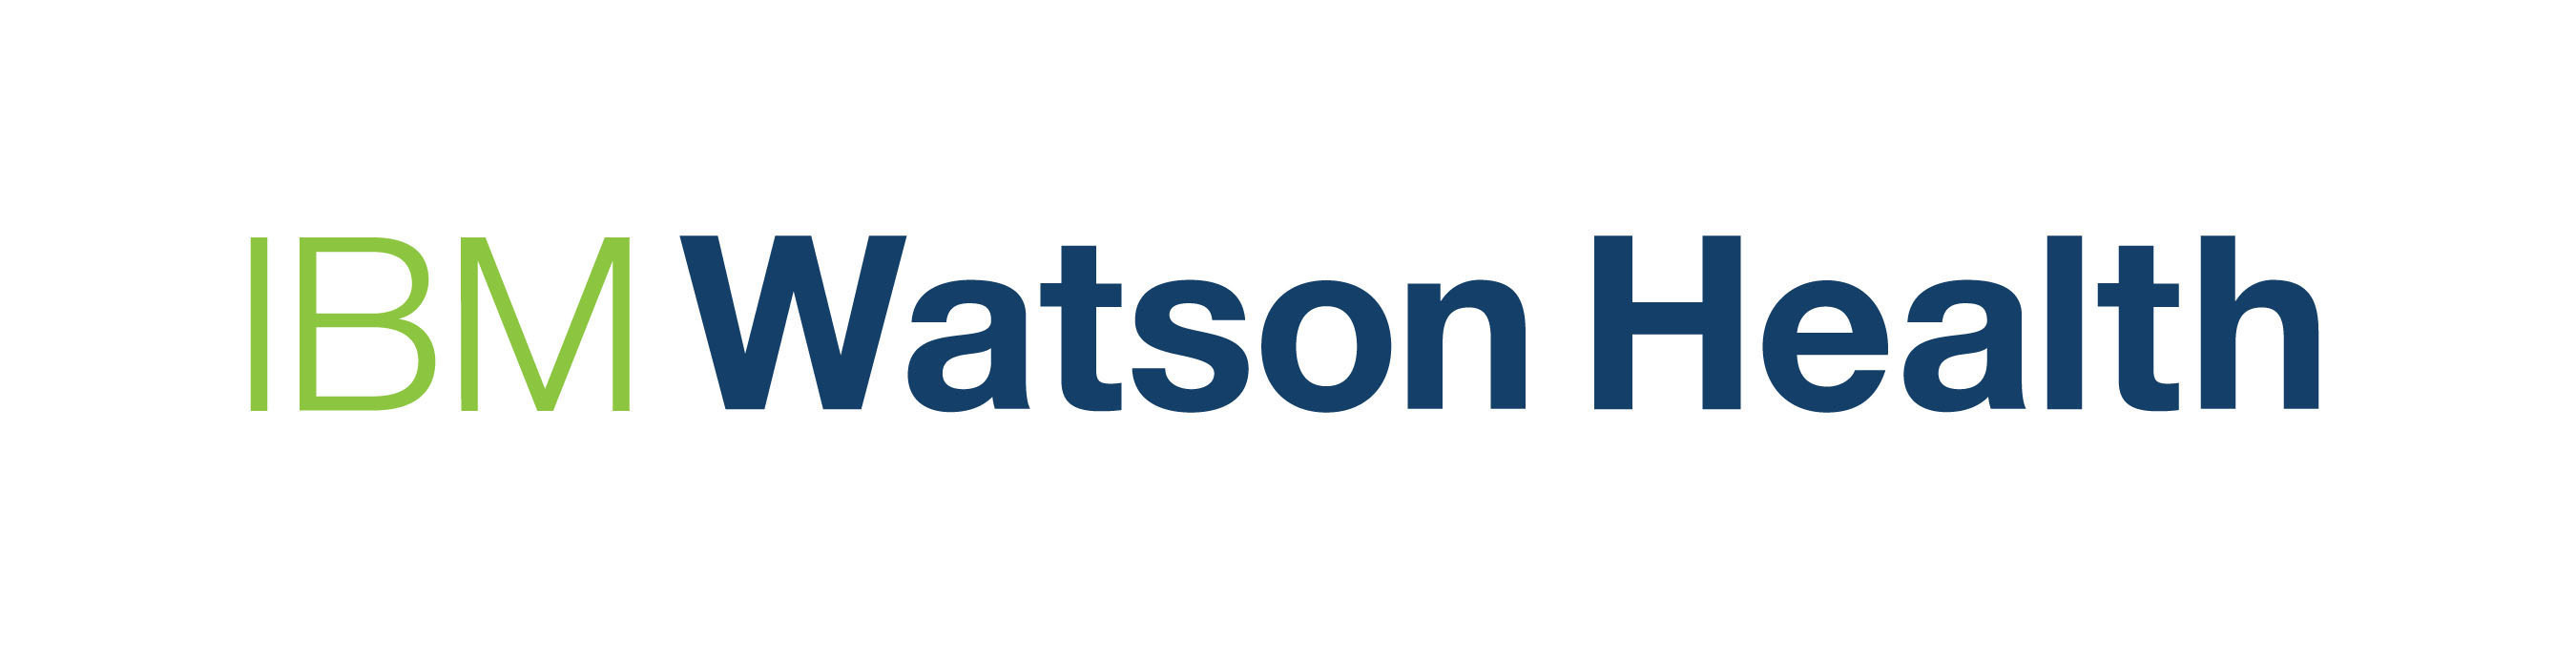 watson ibm logo